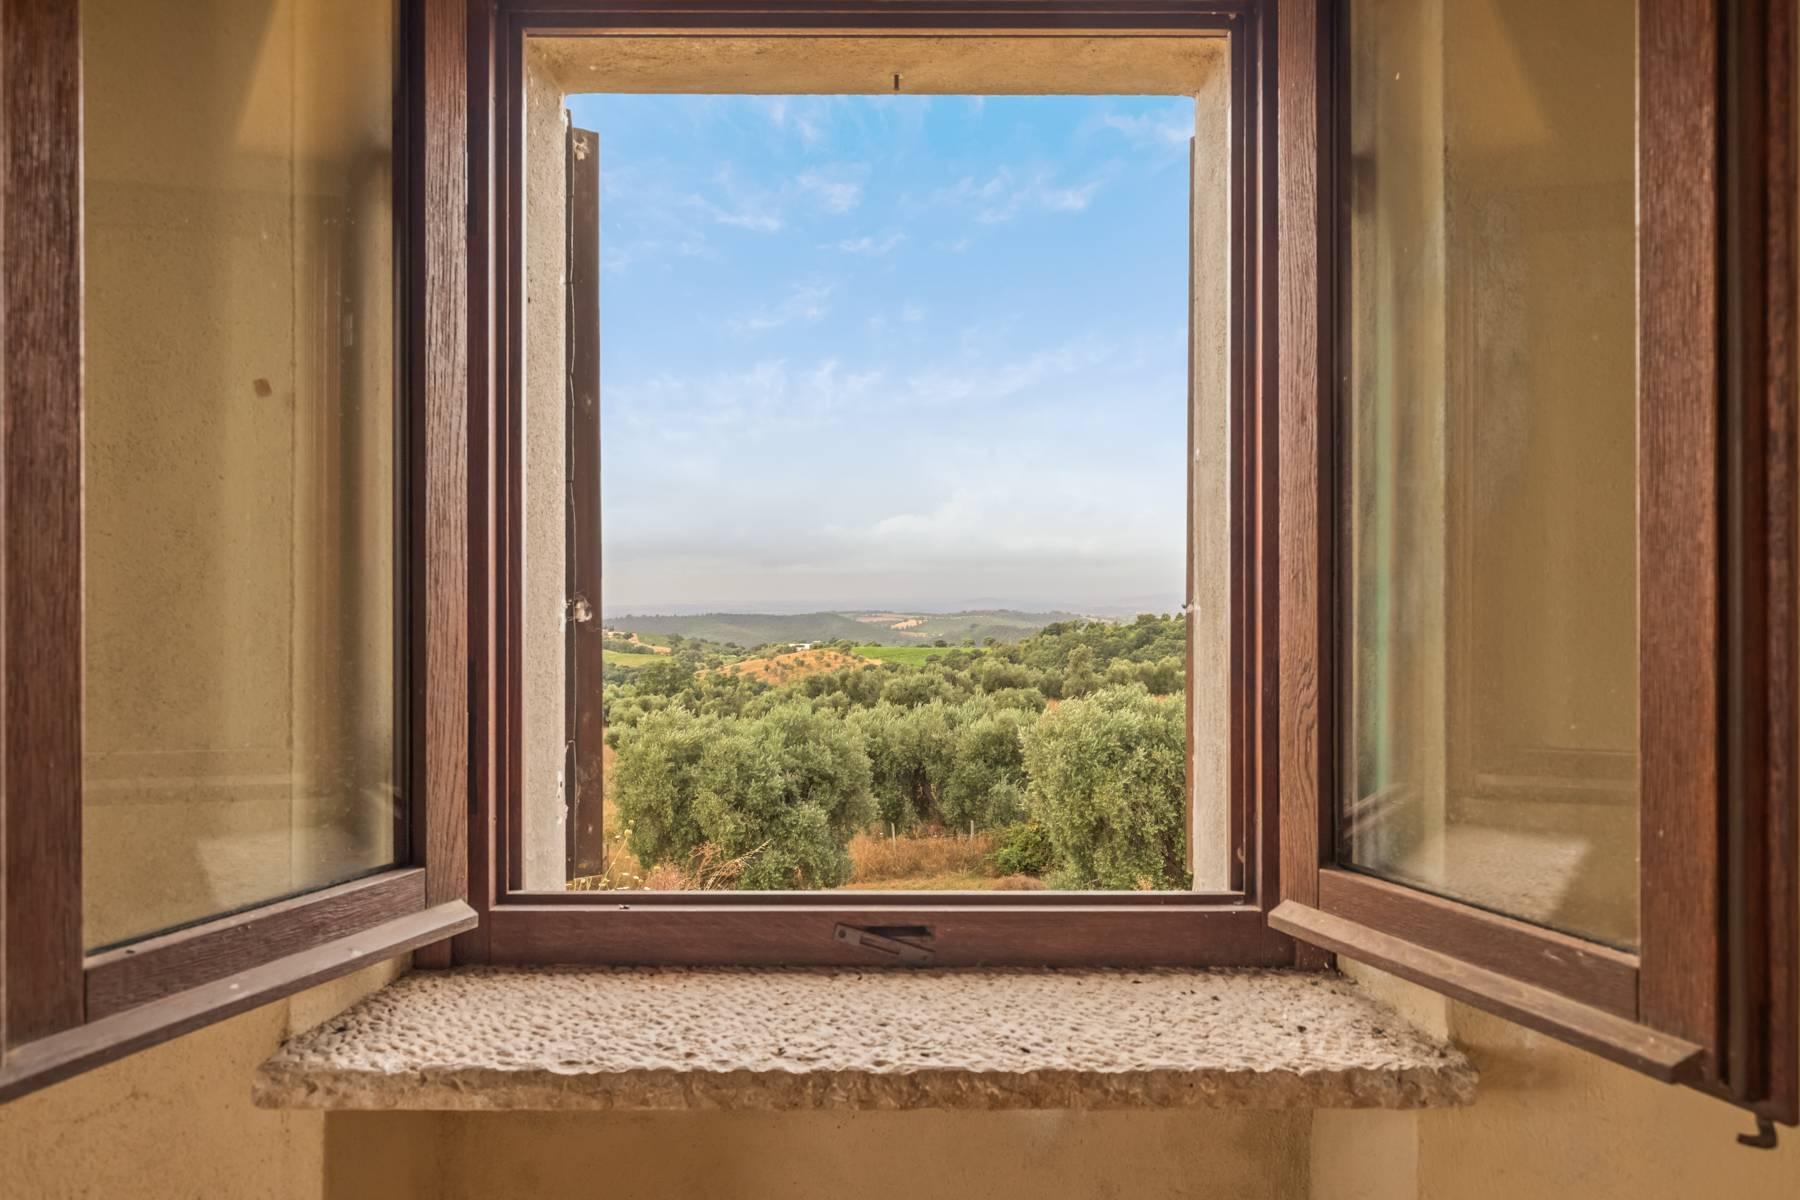 Ferme panoramique en pierre avec oliveraies et vue sur la mer - 3